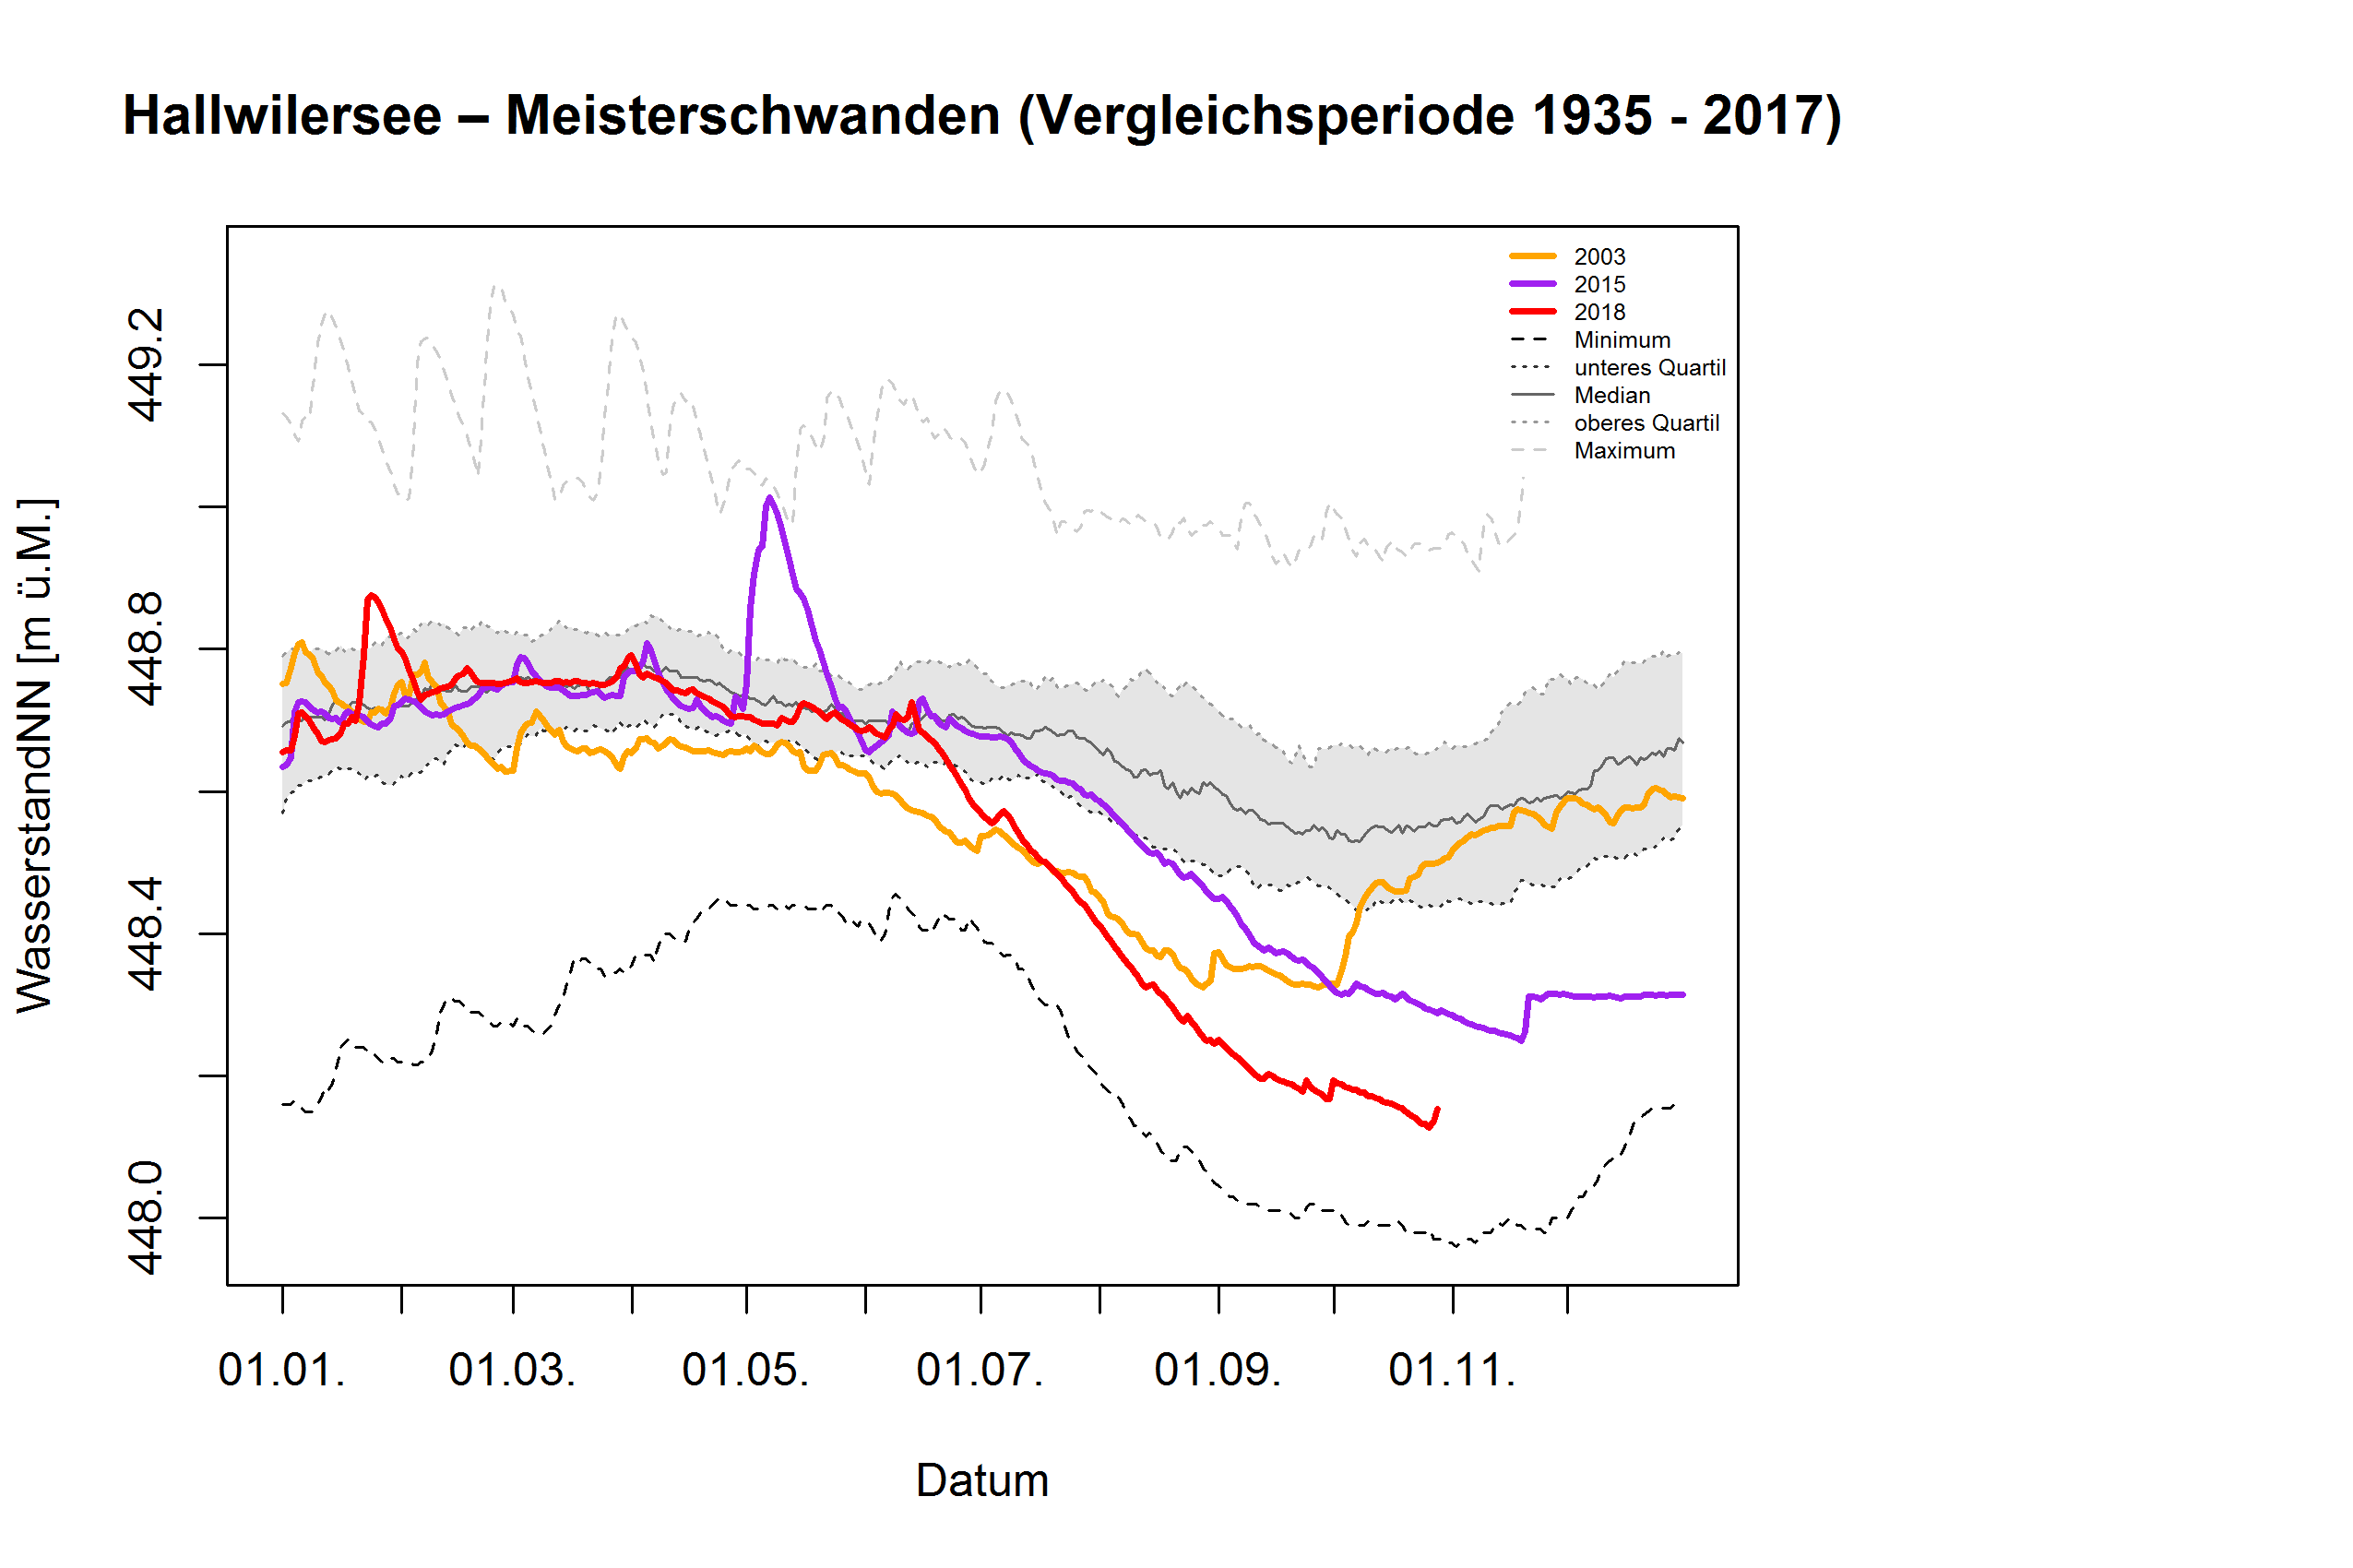 Halllwilersee - Meisterschwanden: Vergleichsperiode 1935 - 2017